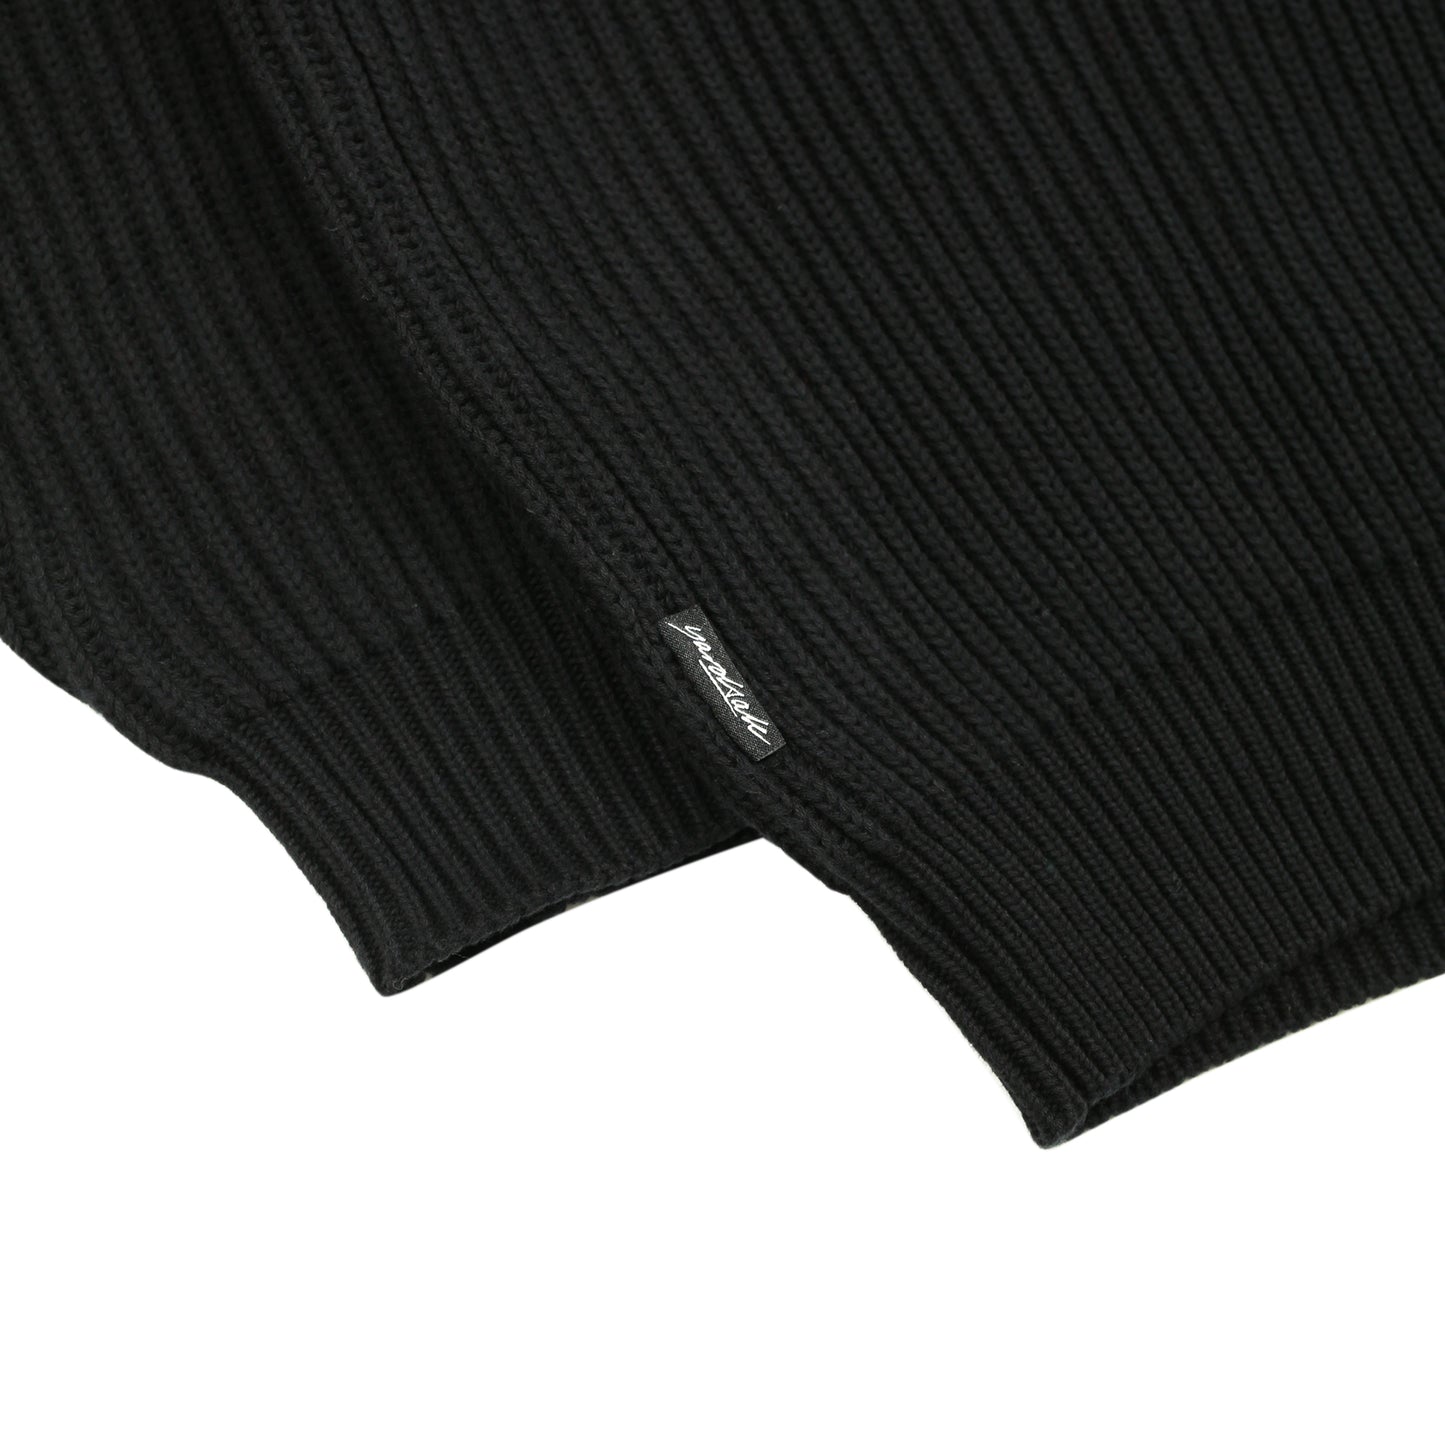 Ripper Knit (Black)